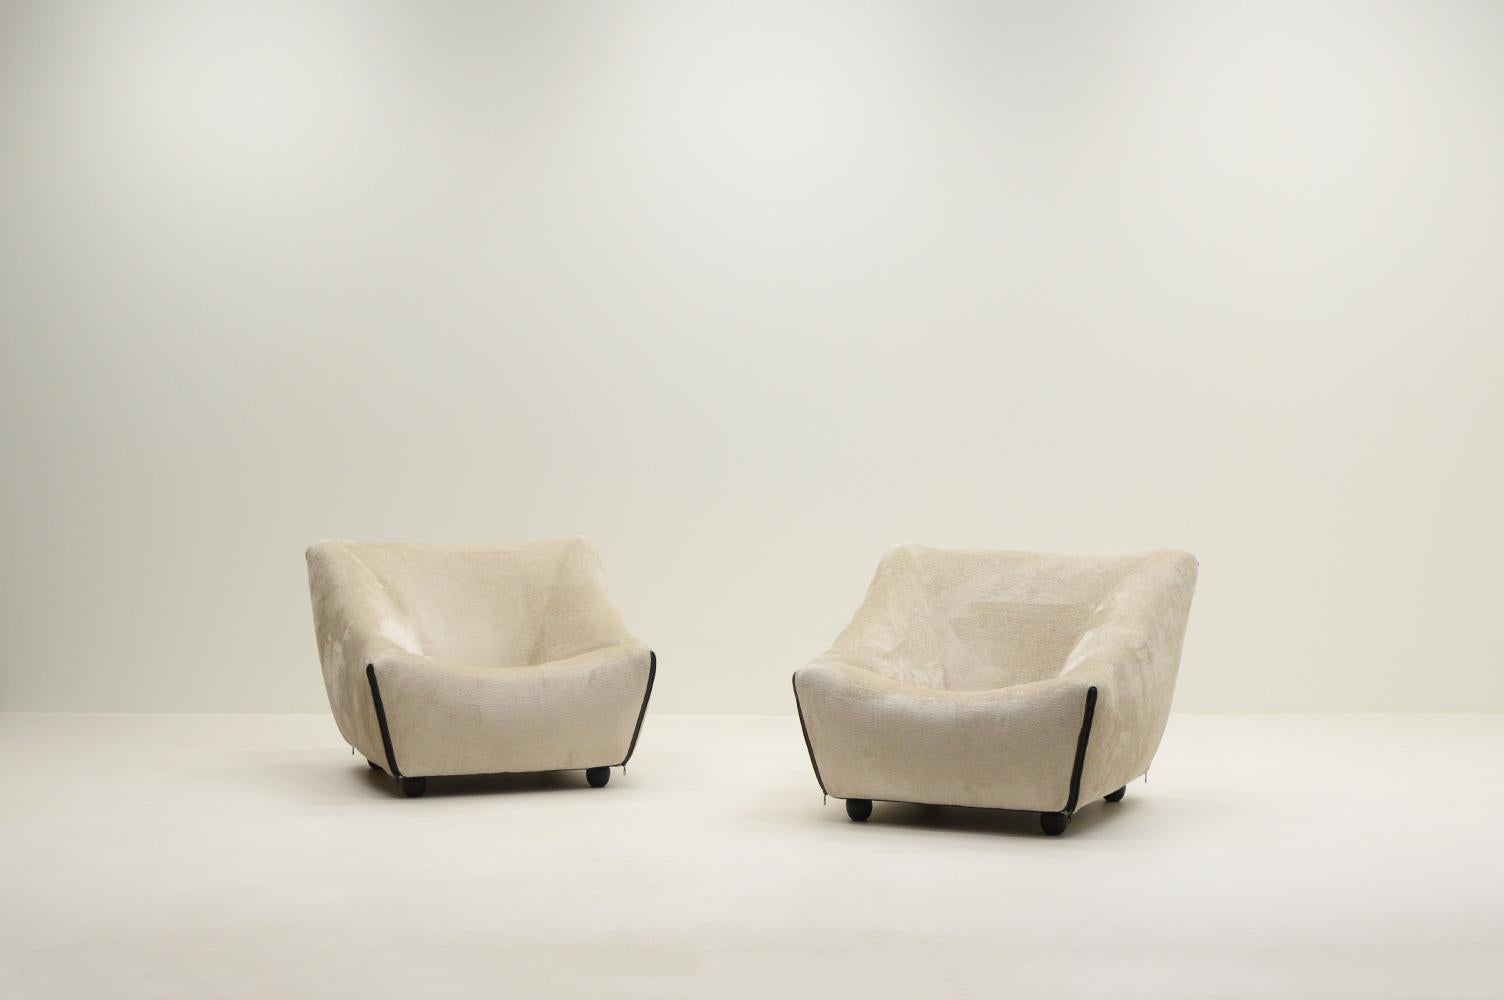 Sehr seltenes Set Nuvola Stühle von Gerard van de Berg für Artifort, 1990er Jahre Niederlande. Dieser Stuhl ist auch unter dem Namen F410 bekannt. Gerard Van den Berg war der Sohn eines Möbeltischlers, begann aber mit einer Ausbildung zum